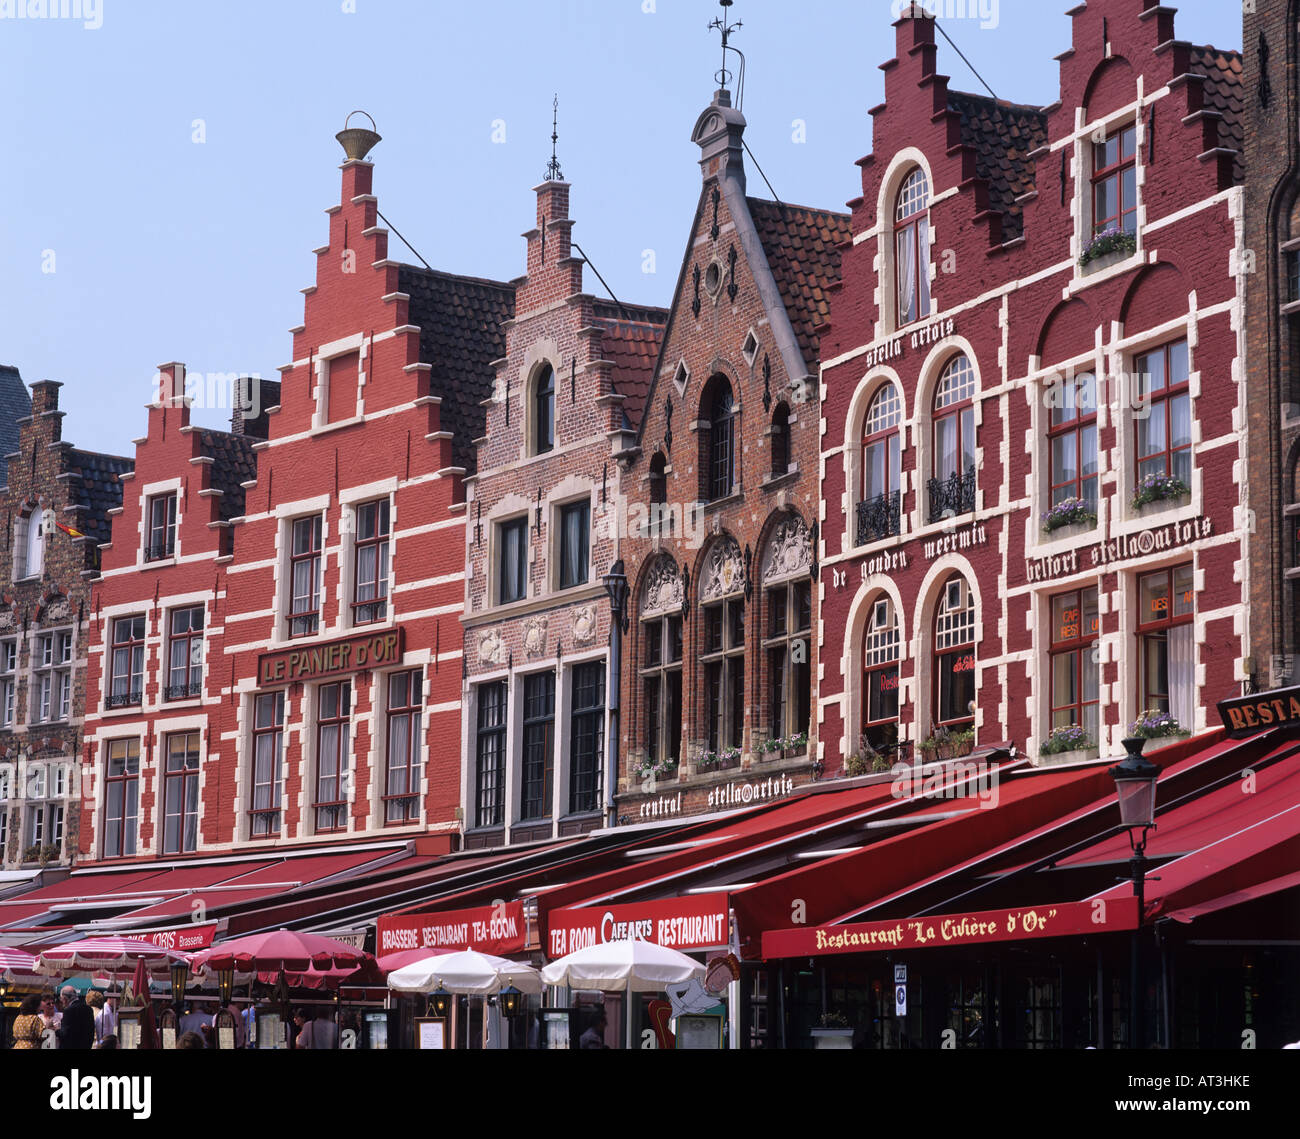 La place du marché, Bruges, Belgique Banque D'Images